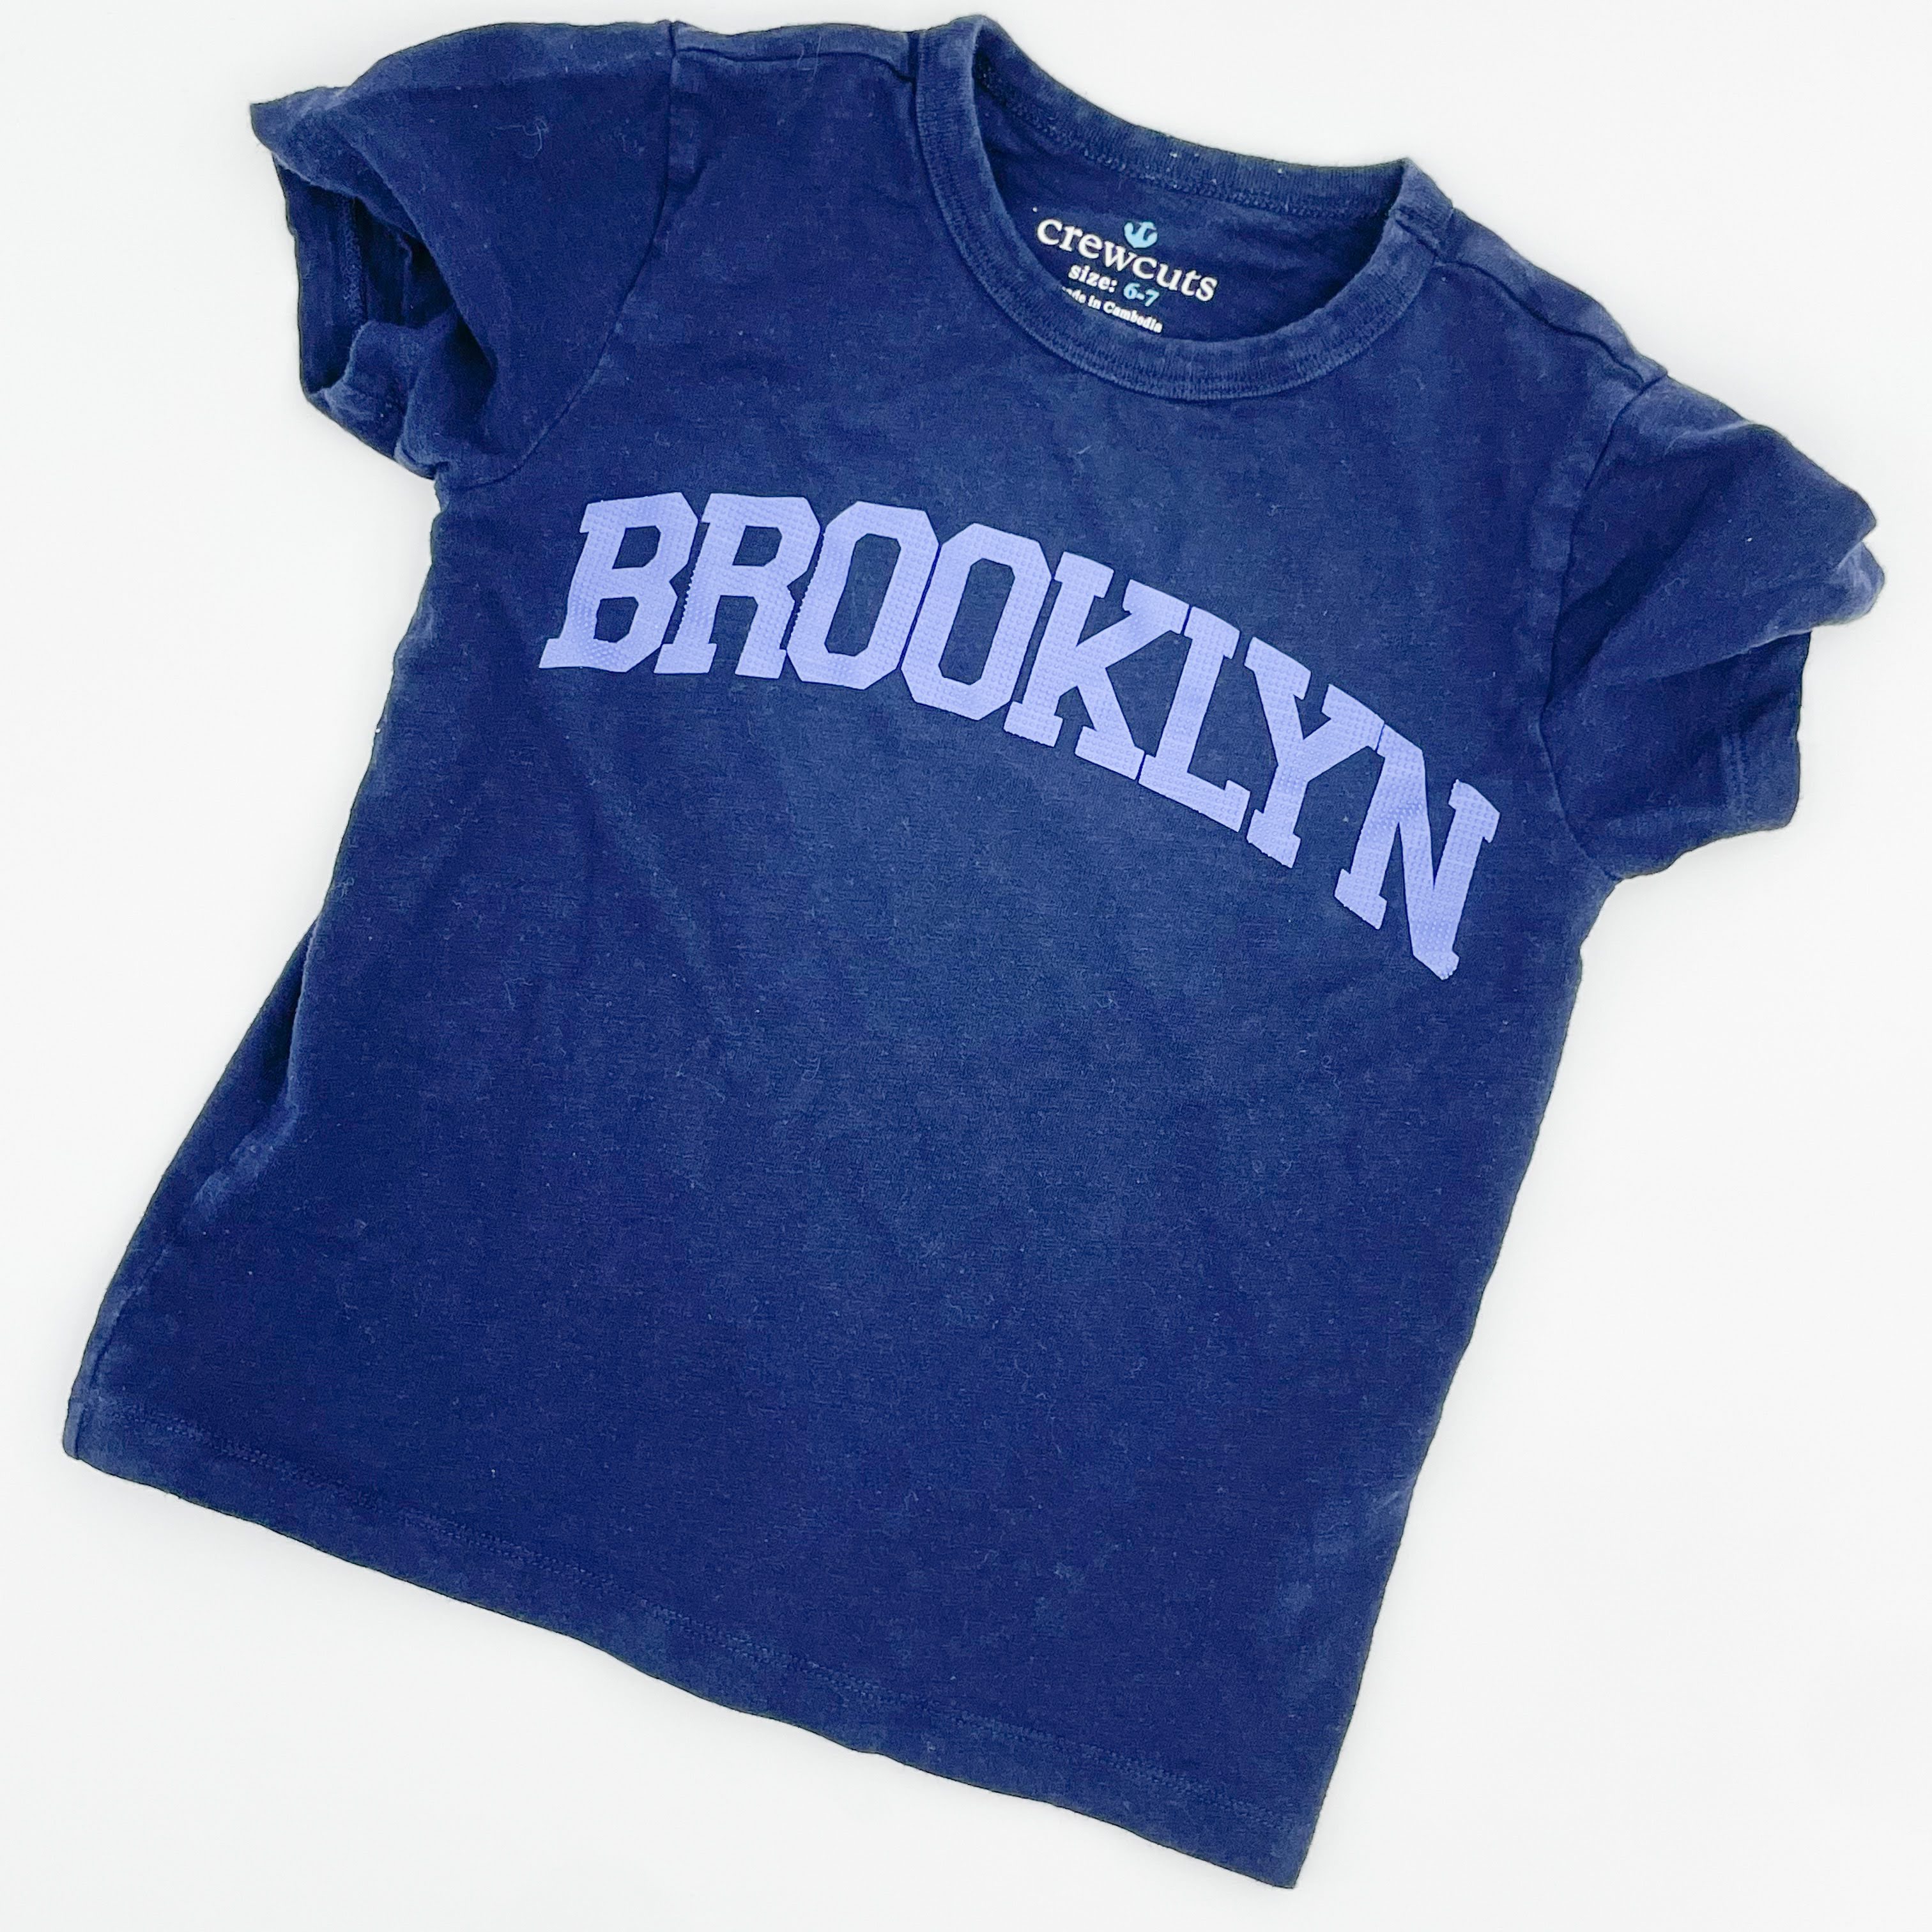 Brooklyn - Crewcuts